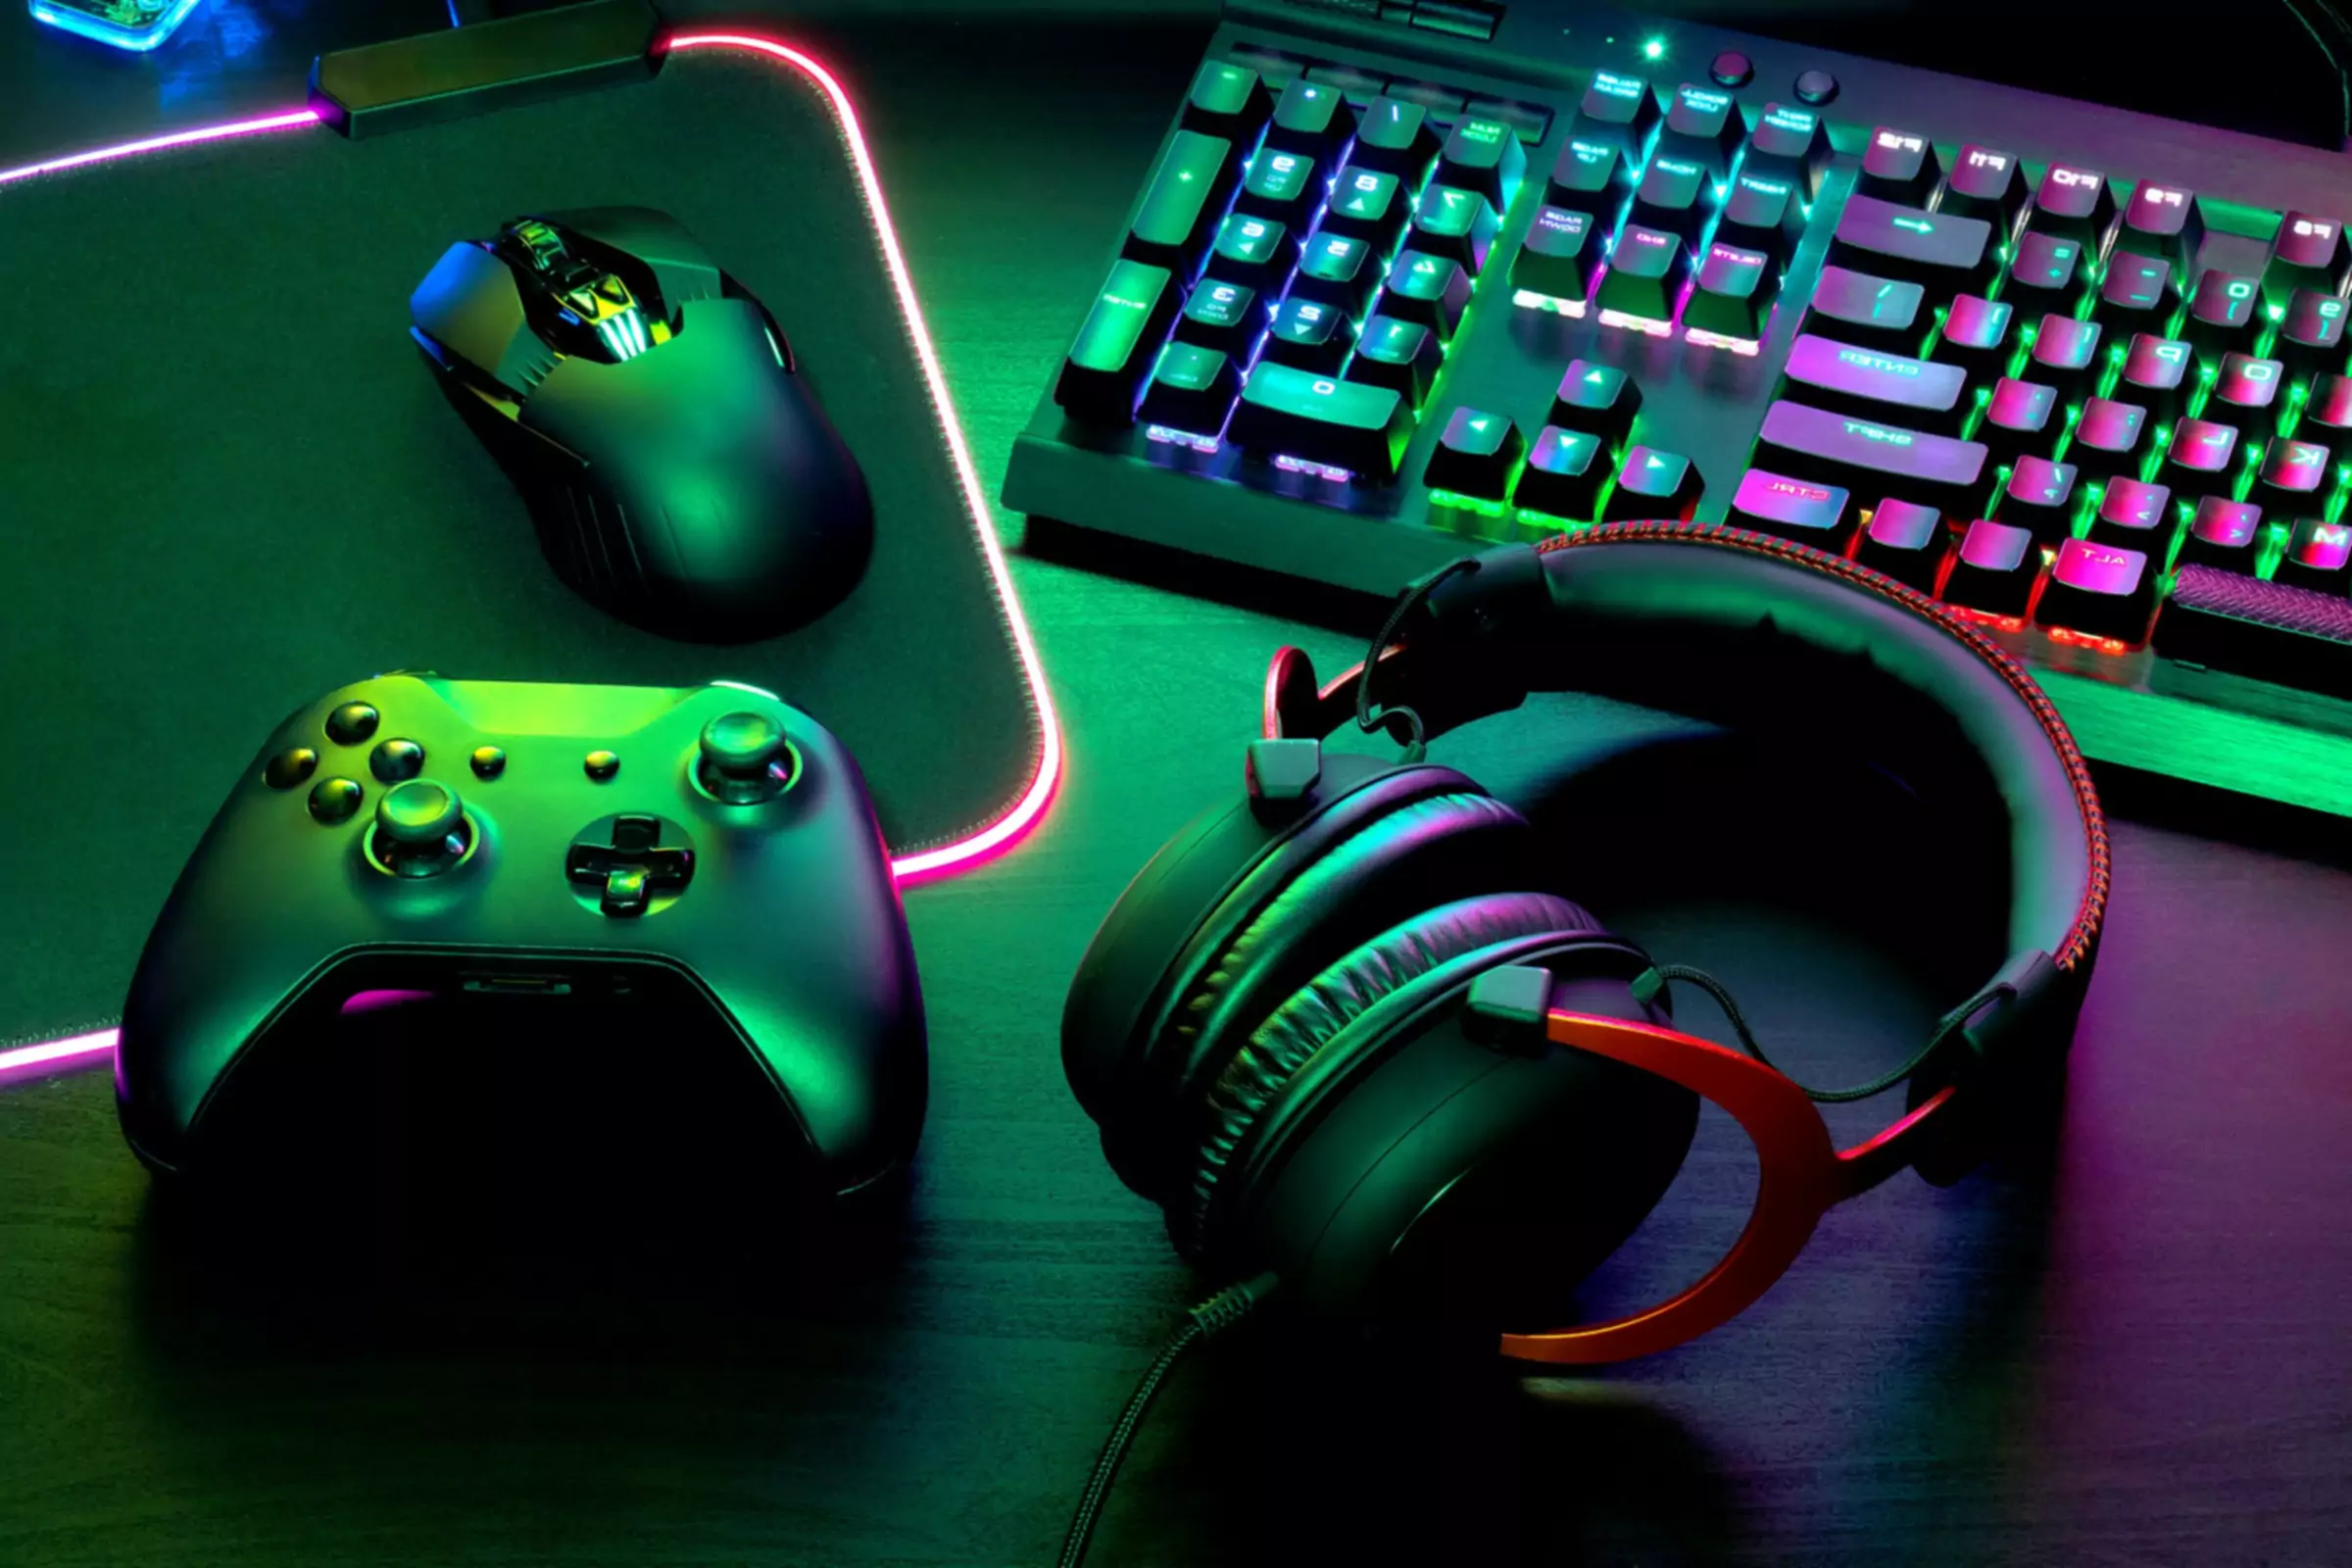 Gaming controller ved siden af tastaturet mus og tastatur oplyst med grønt og lilla lys